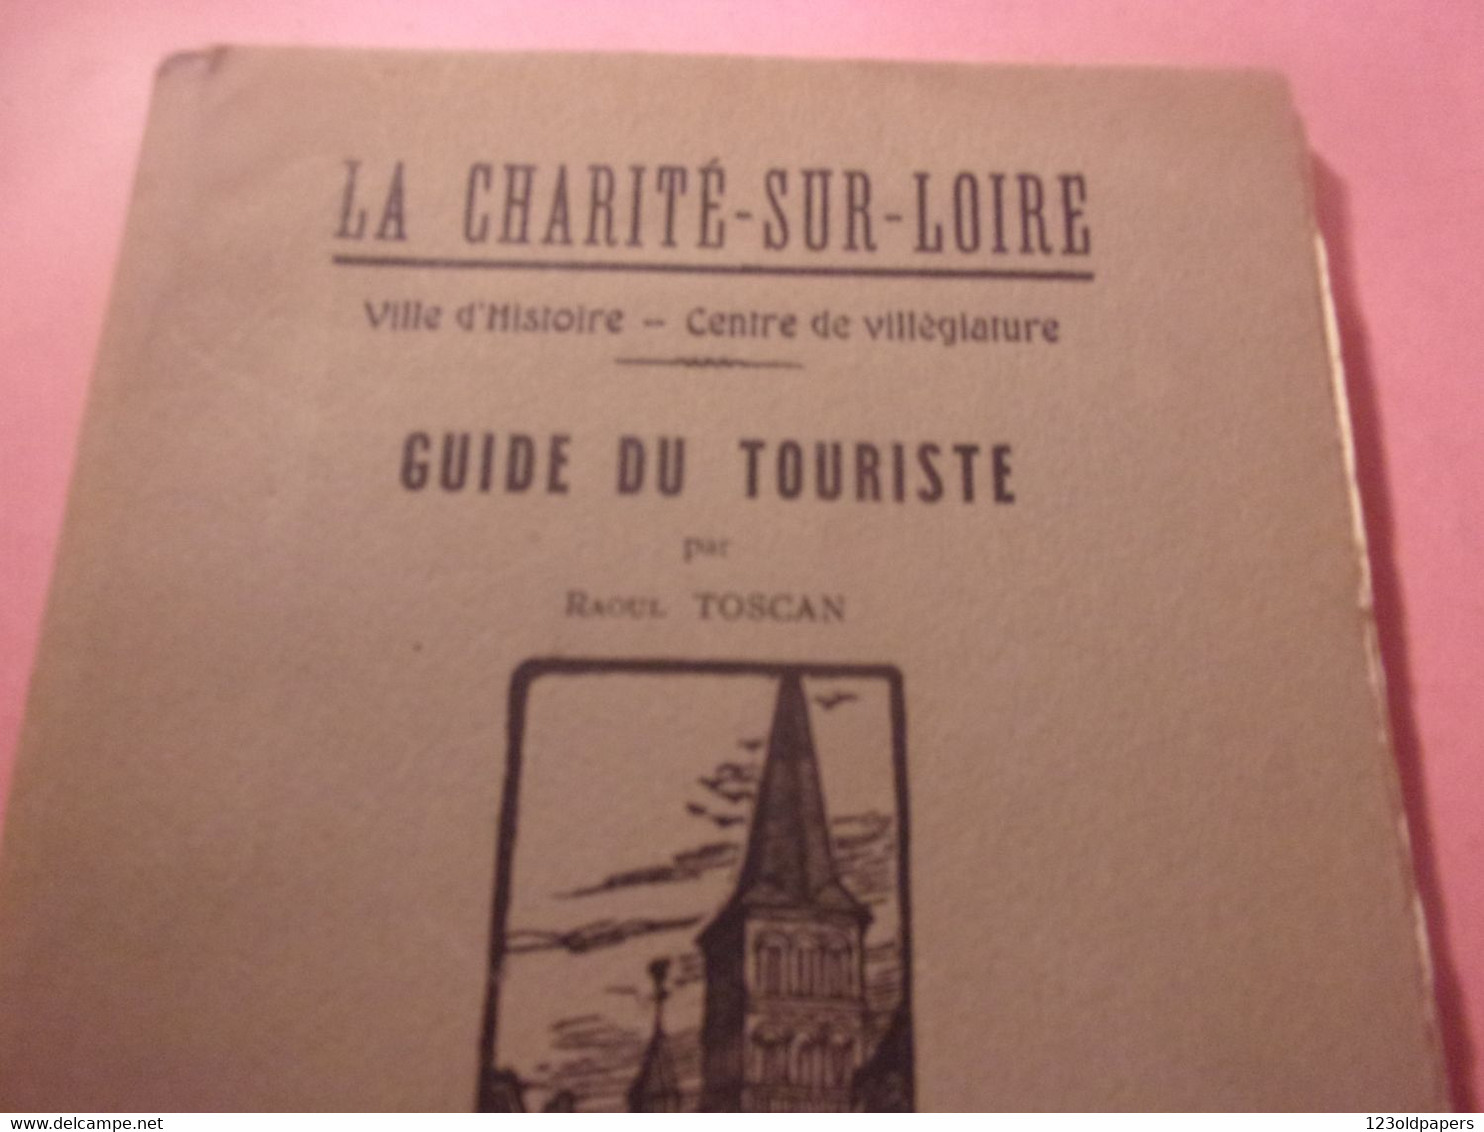 ♥️ La Charité-sur-Loire, Ville D'histoire, Centre De Villégiature, Guide Du Touriste Par Raoul Toscan. Fernand CHALANDRE - Bourgogne